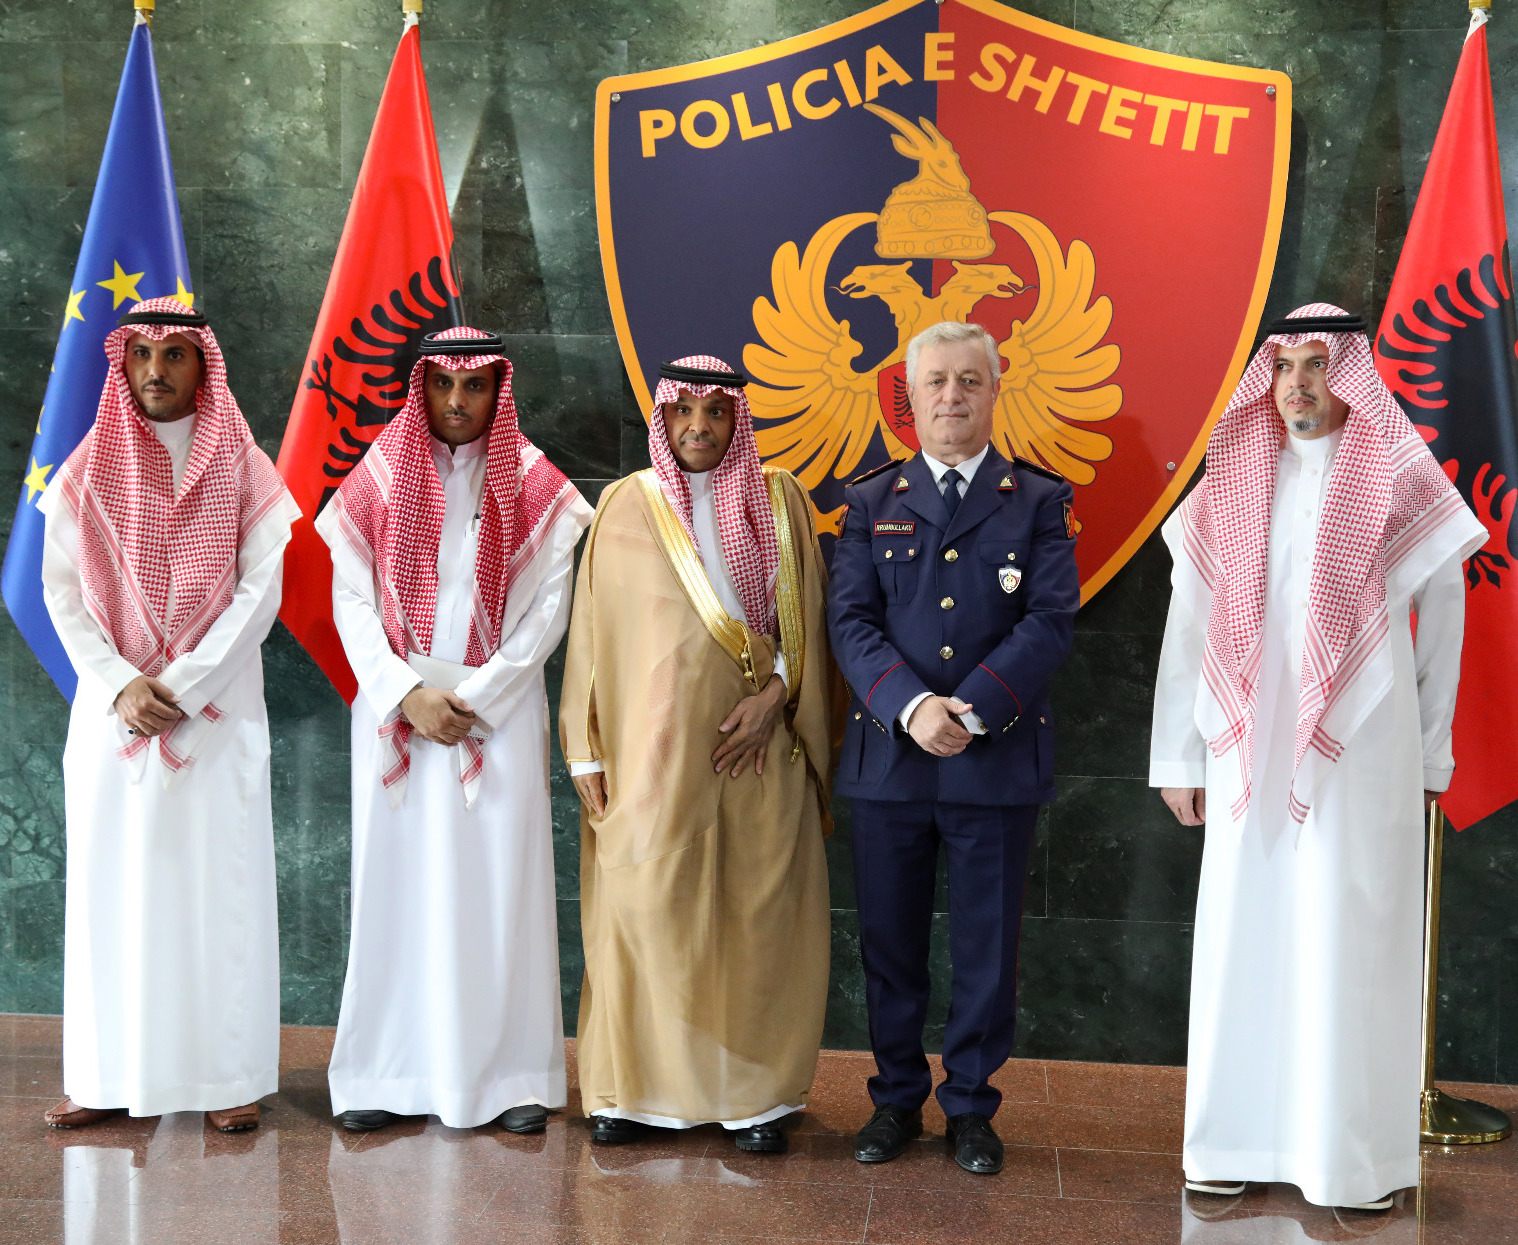 Bashkëpunim mes dy policive, Rrumbullaku takon delegacionin e lartë nga Ministria e Brendshme e Mbretërisë së Arabisë Saudite